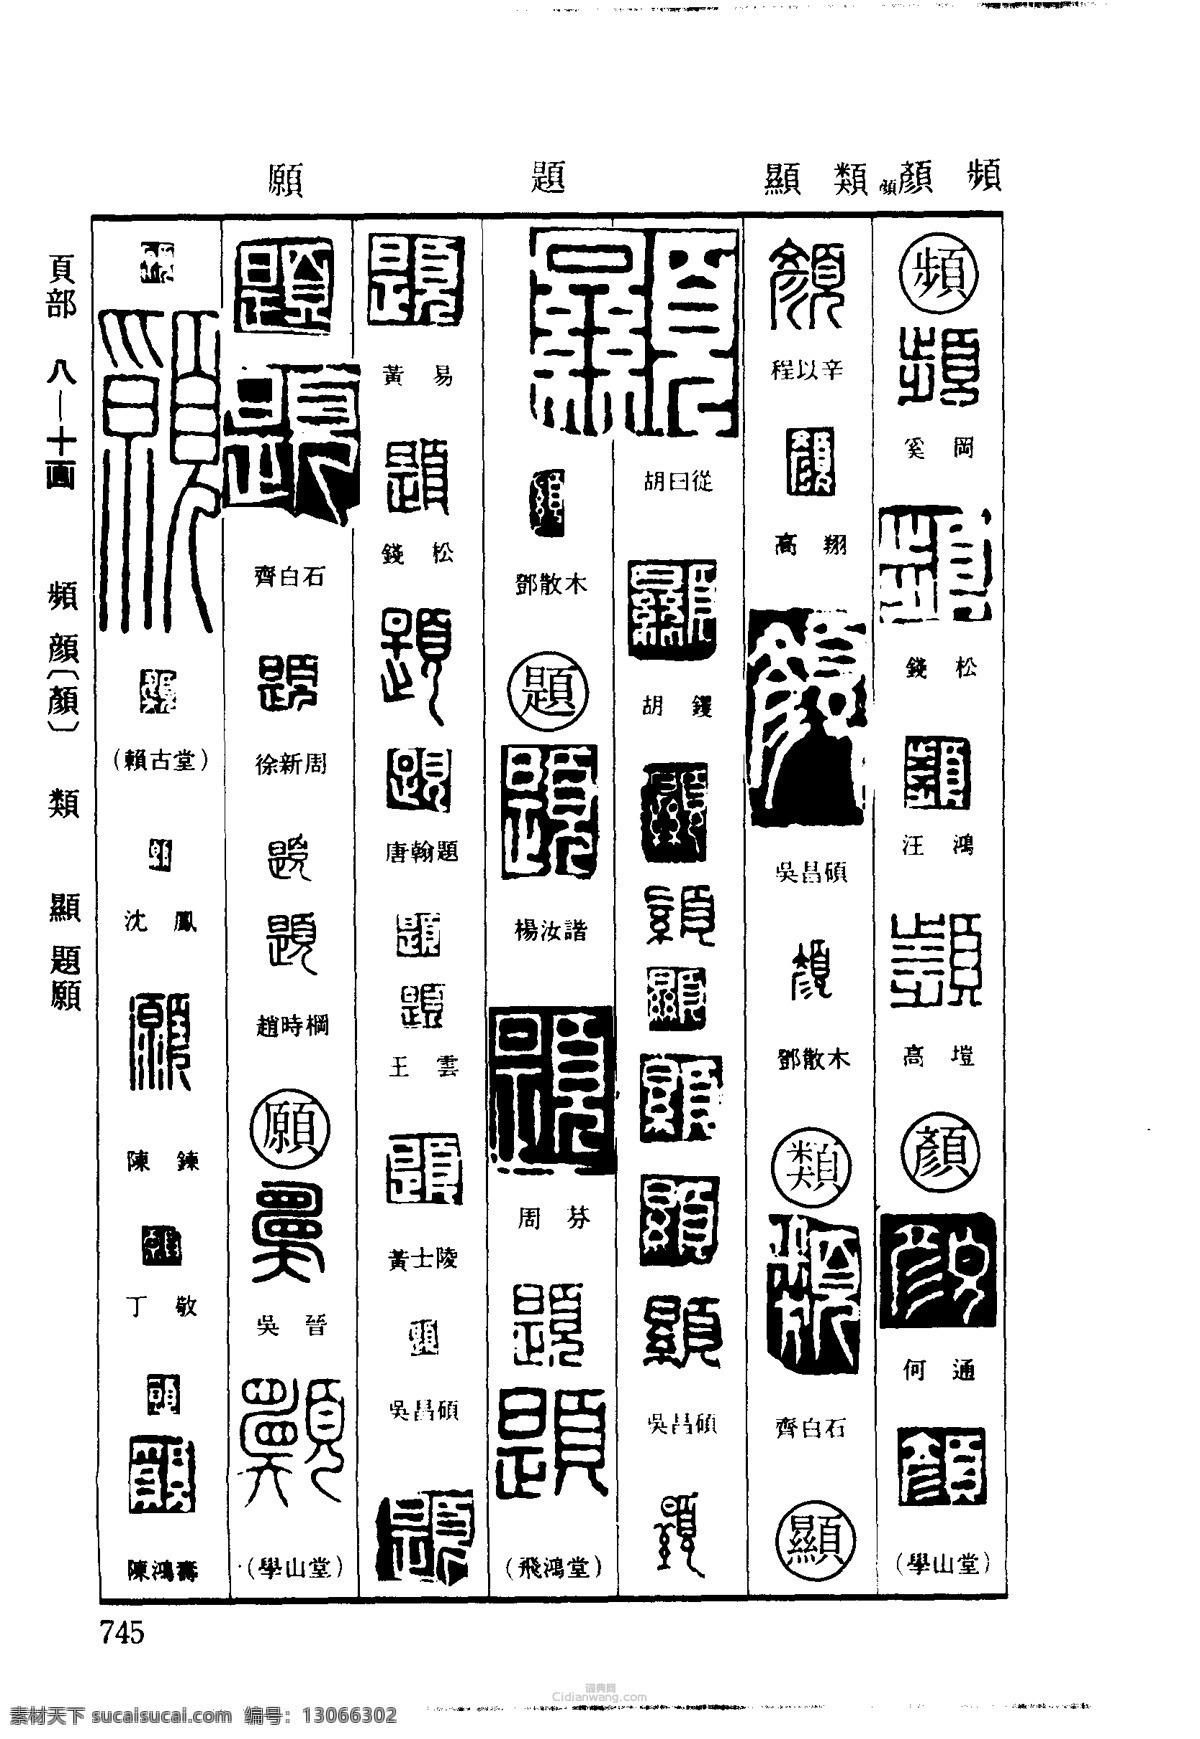 篆刻字体 雕刻字体 印章字体 字体设计 印章刻字 古人印章字 印章字体大全 文化艺术 绘画书法